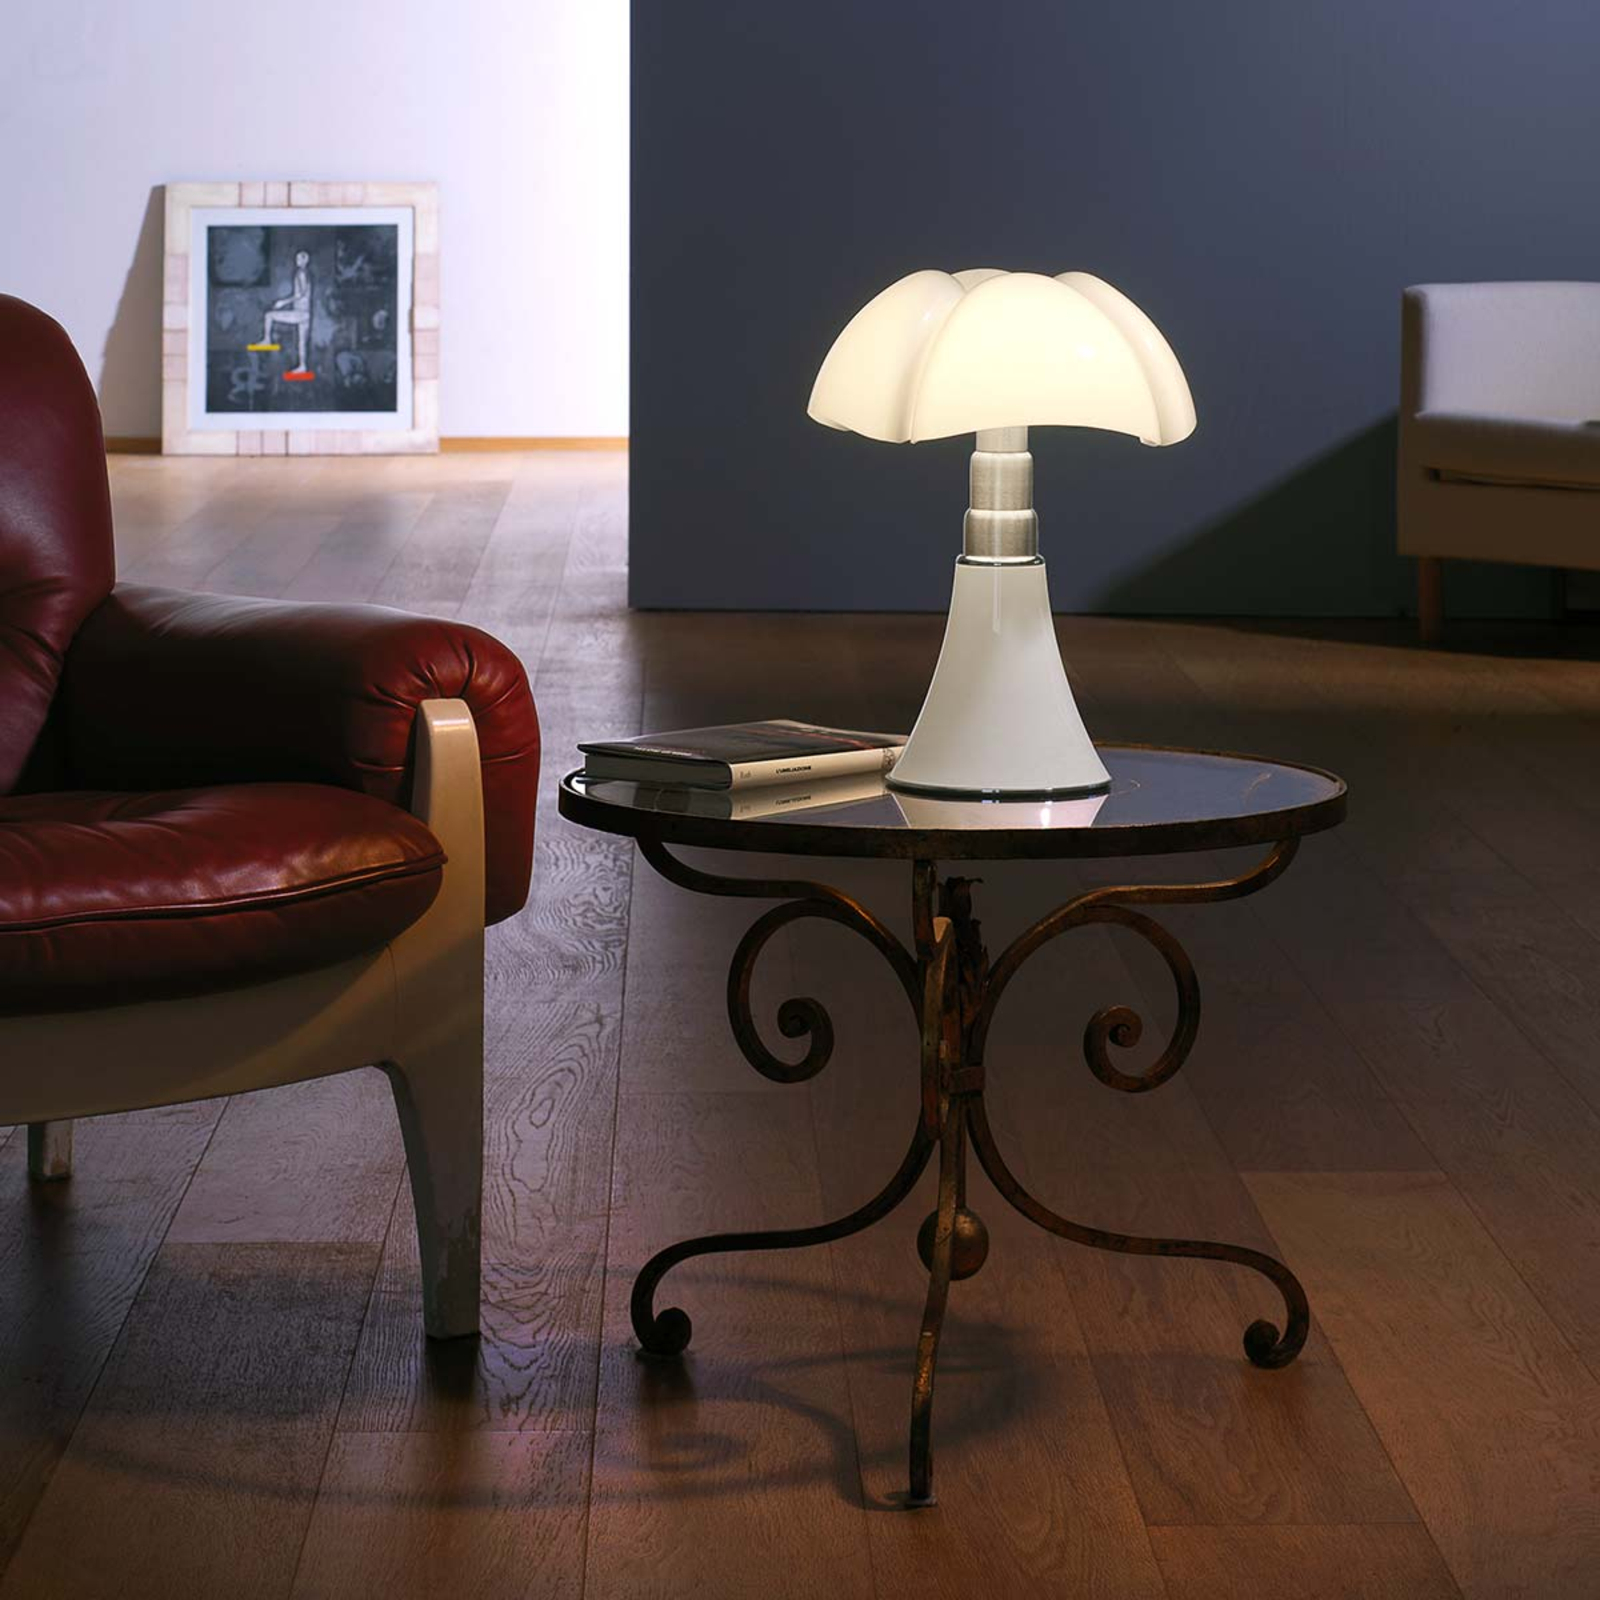 Martinelli Luce Minipipistrello lampă masă alb